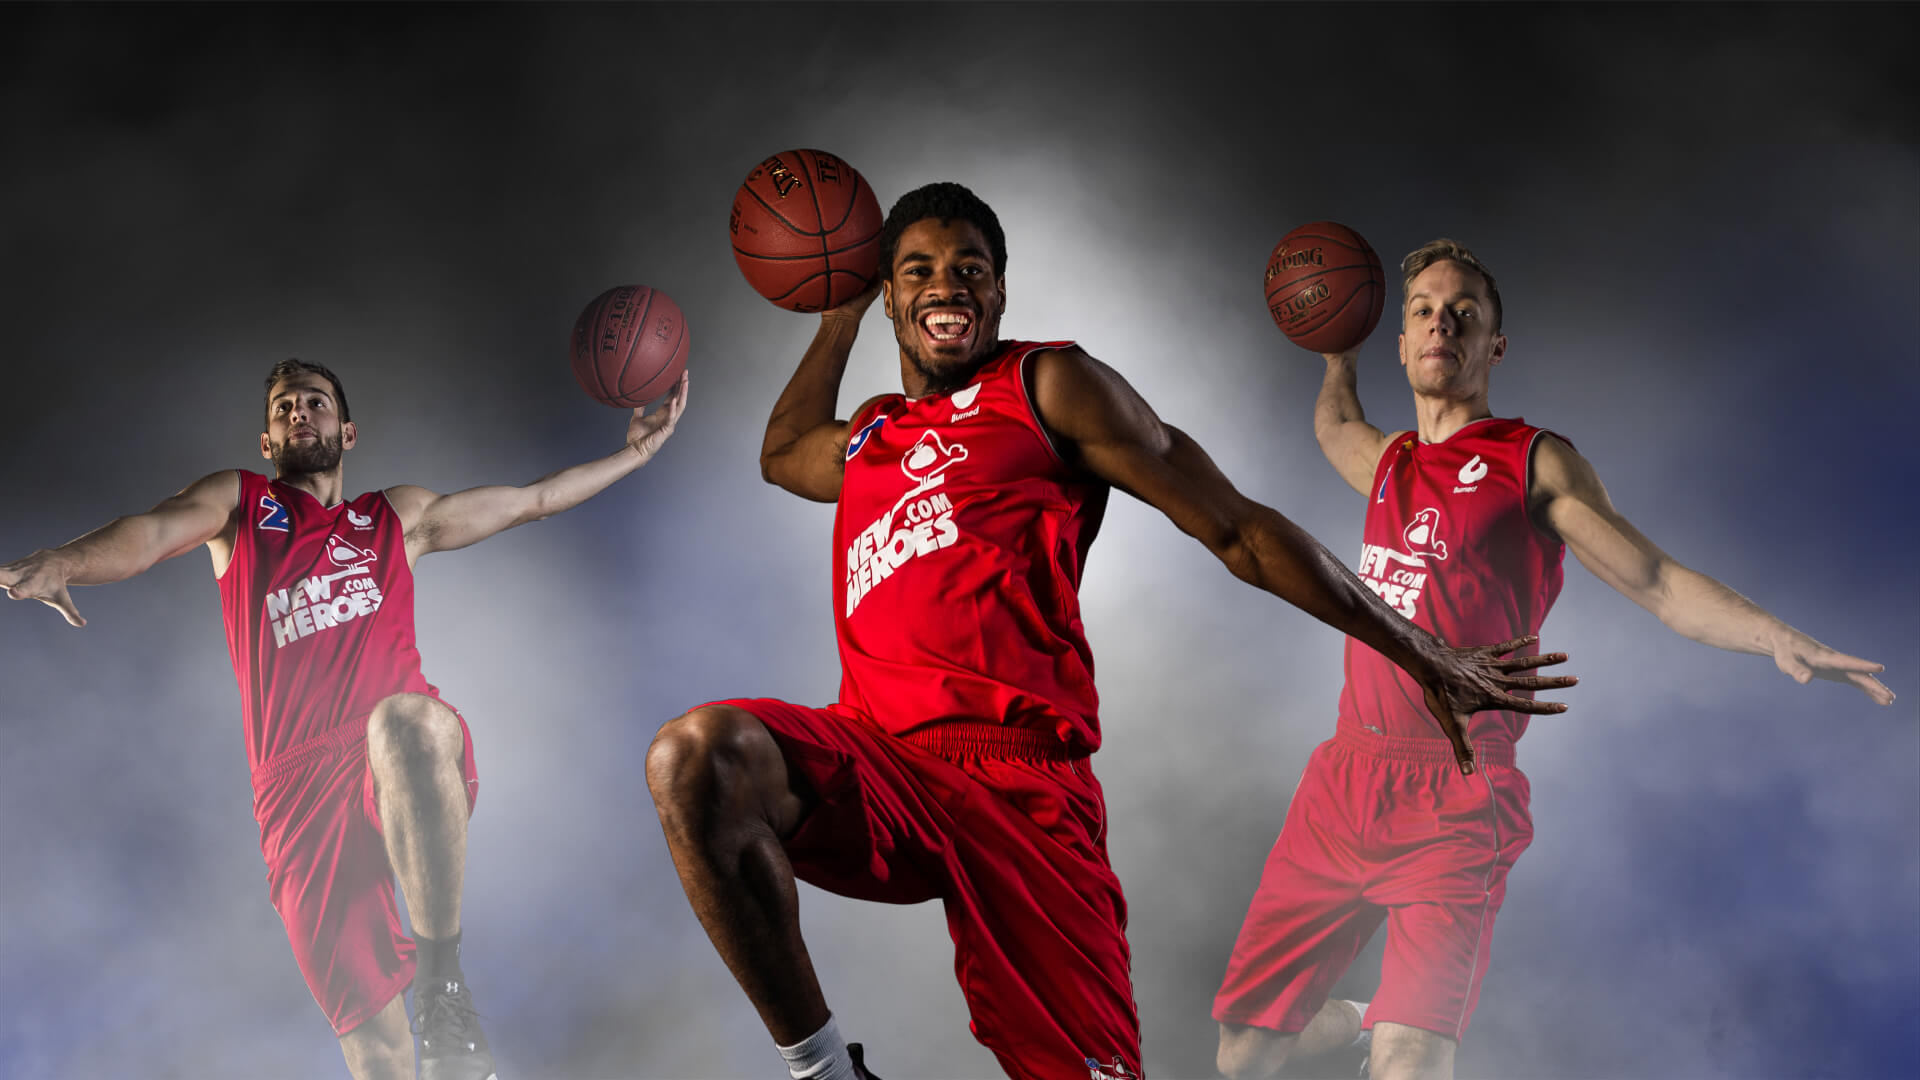 drie basketballers springen met bal in lucht 